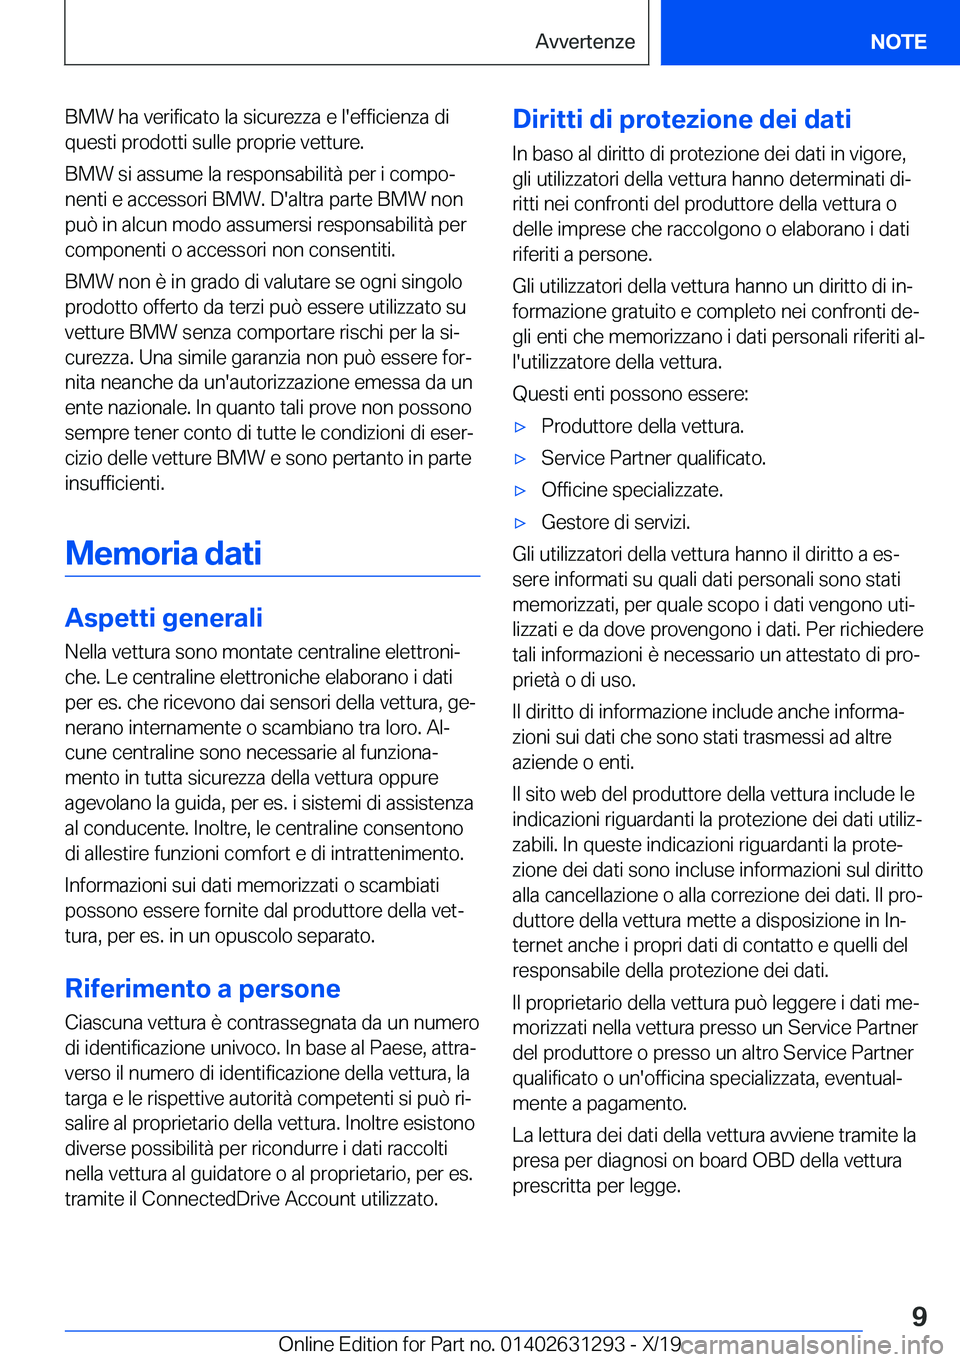 BMW M8 2020  Libretti Di Uso E manutenzione (in Italian) �B�M�W��h�a��v�e�r�i�f�i�c�a�t�o��l�a��s�i�c�u�r�e�z�z�a��e��l�'�e�f�f�i�c�i�e�n�z�a��d�i�q�u�e�s�t�i��p�r�o�d�o�t�t�i��s�u�l�l�e��p�r�o�p�r�i�e��v�e�t�t�u�r�e�.
�B�M�W��s�i��a�s�s�u�